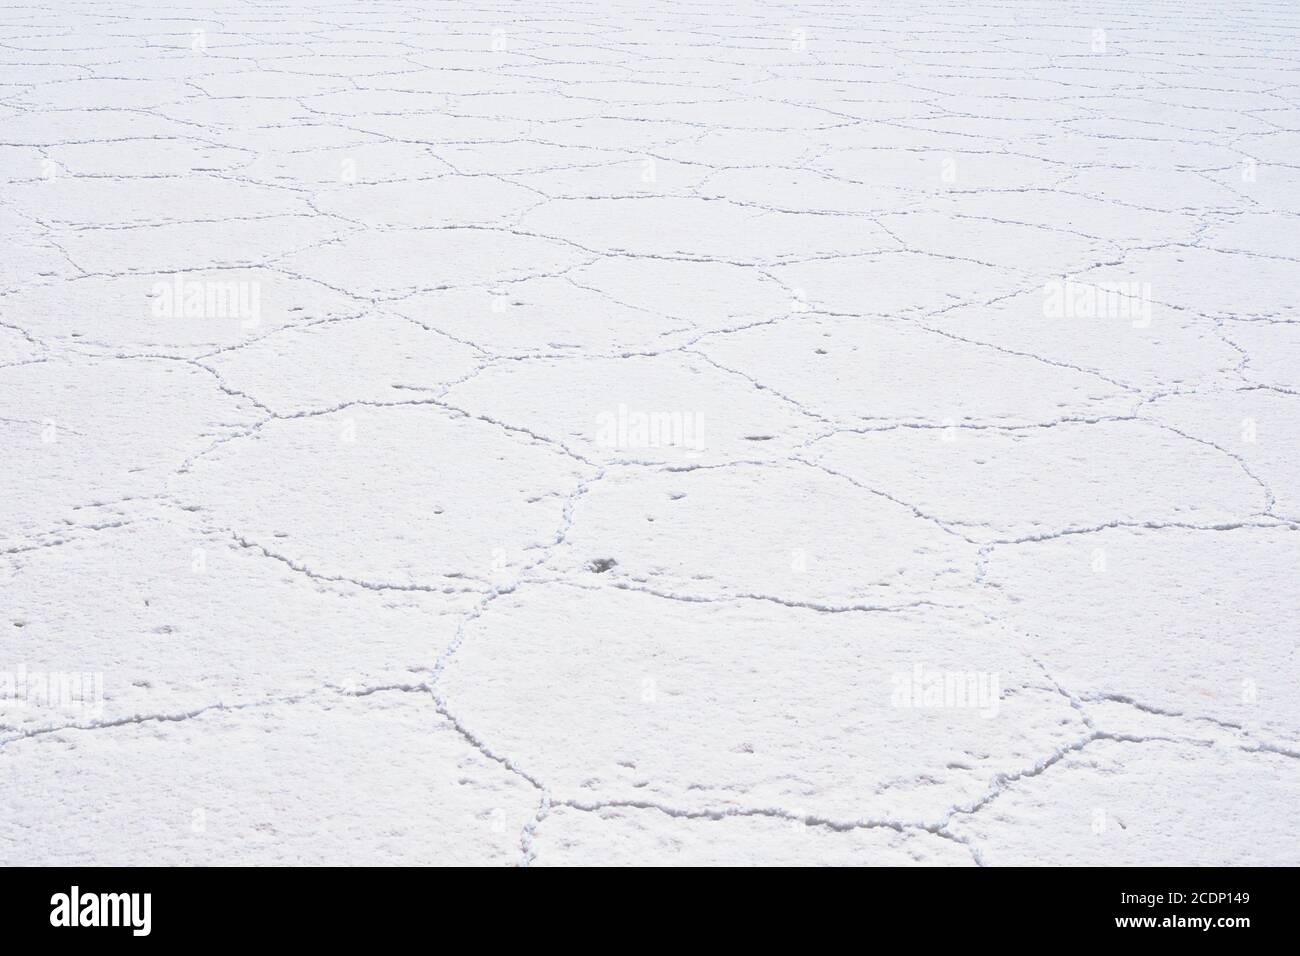 América del Sur - Salar de Uyuni en Bolivia Foto de stock